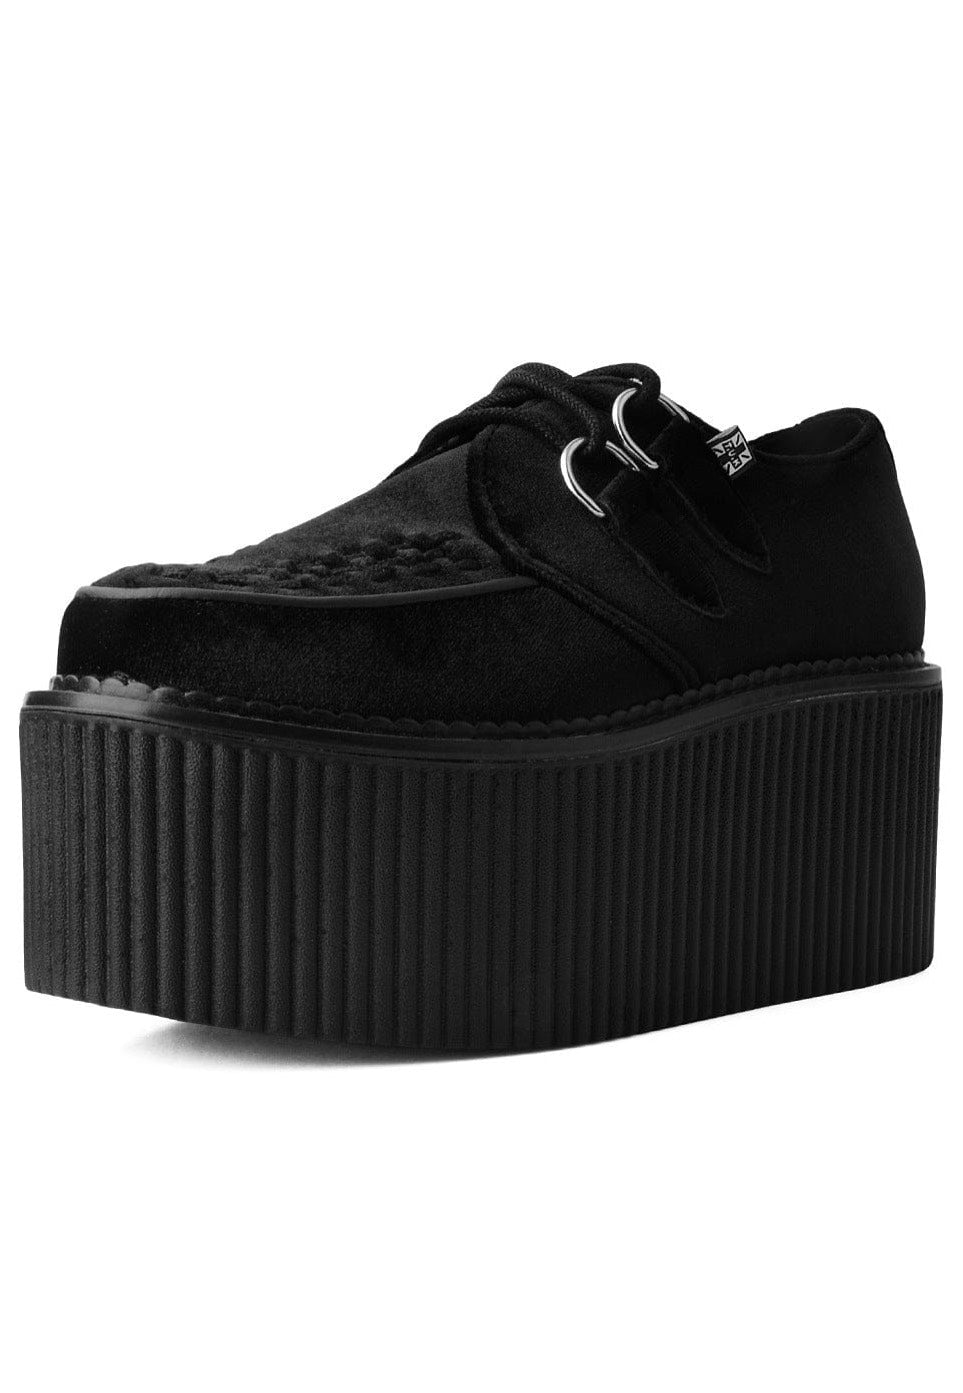 T.U.K. - Stratocreeper Black Velvet - Girl Shoes